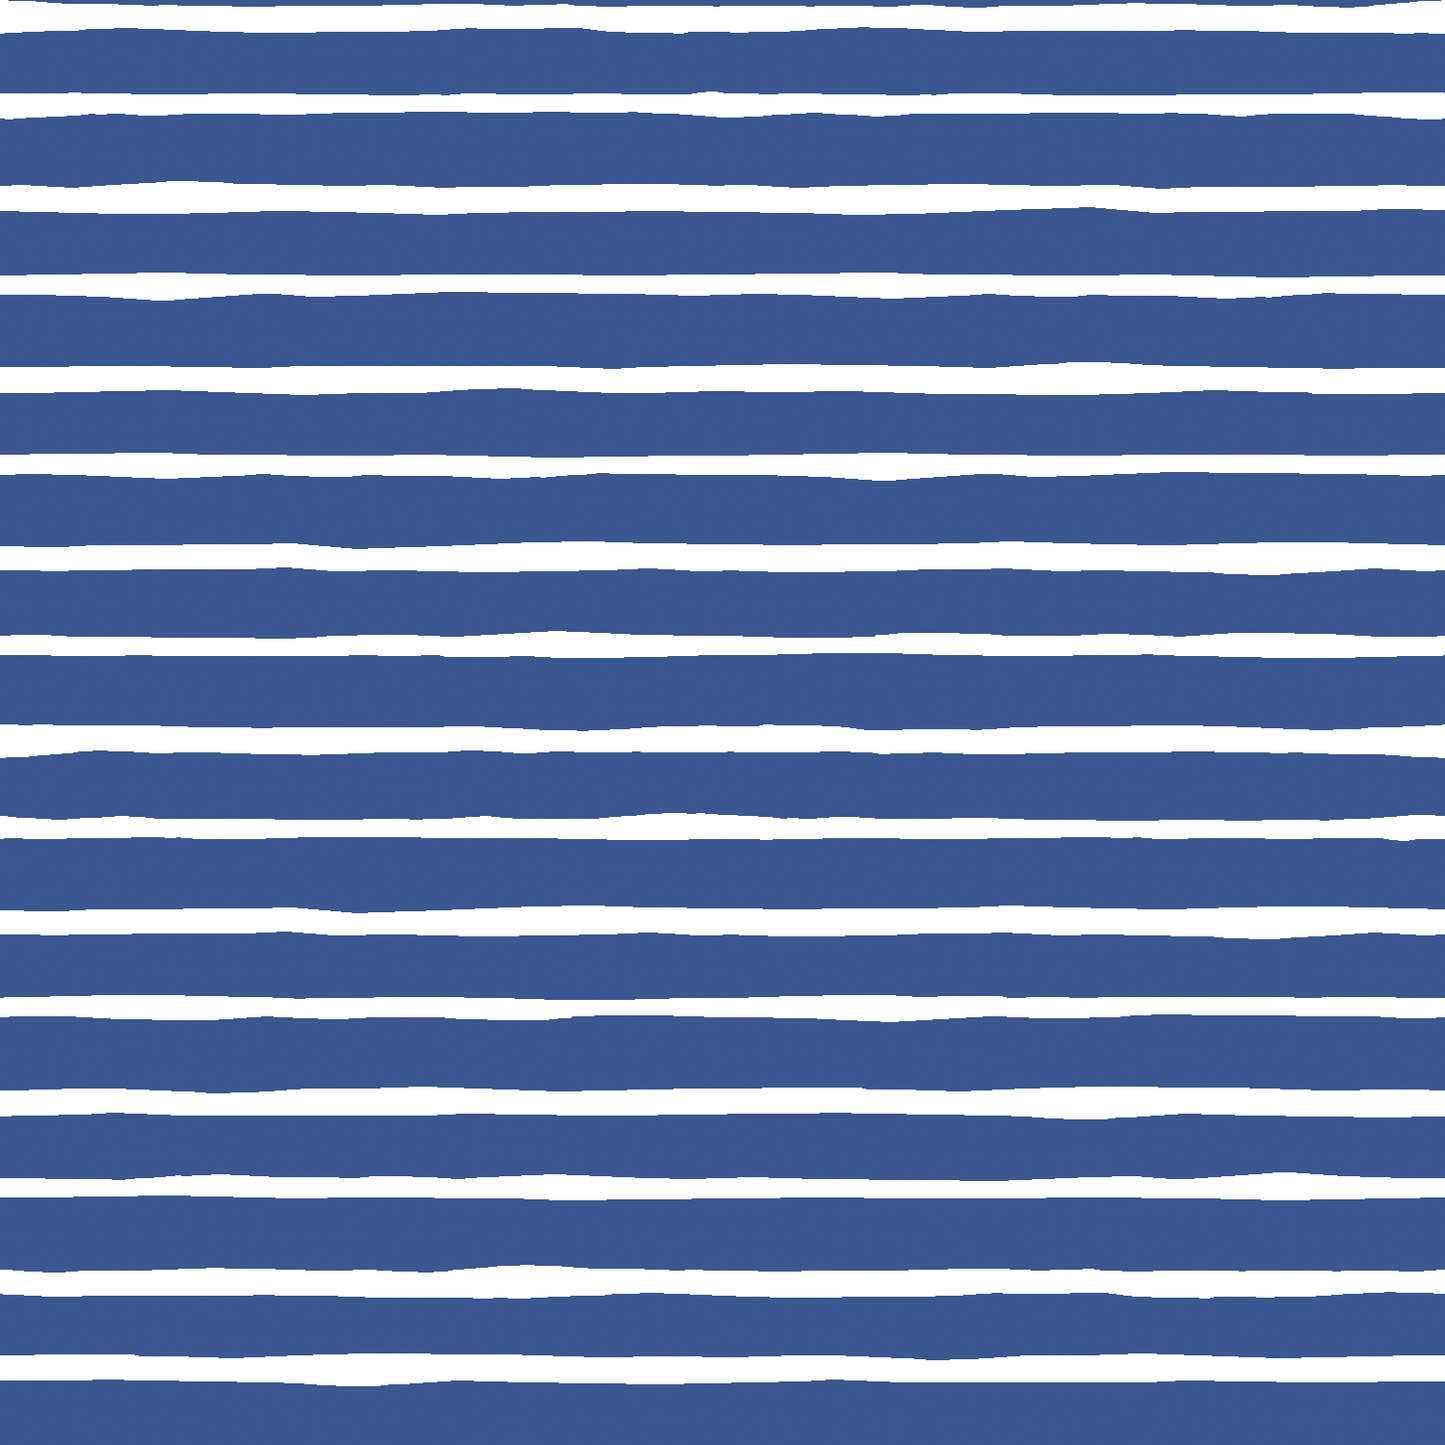 Artisan Stripe in Blue Jay